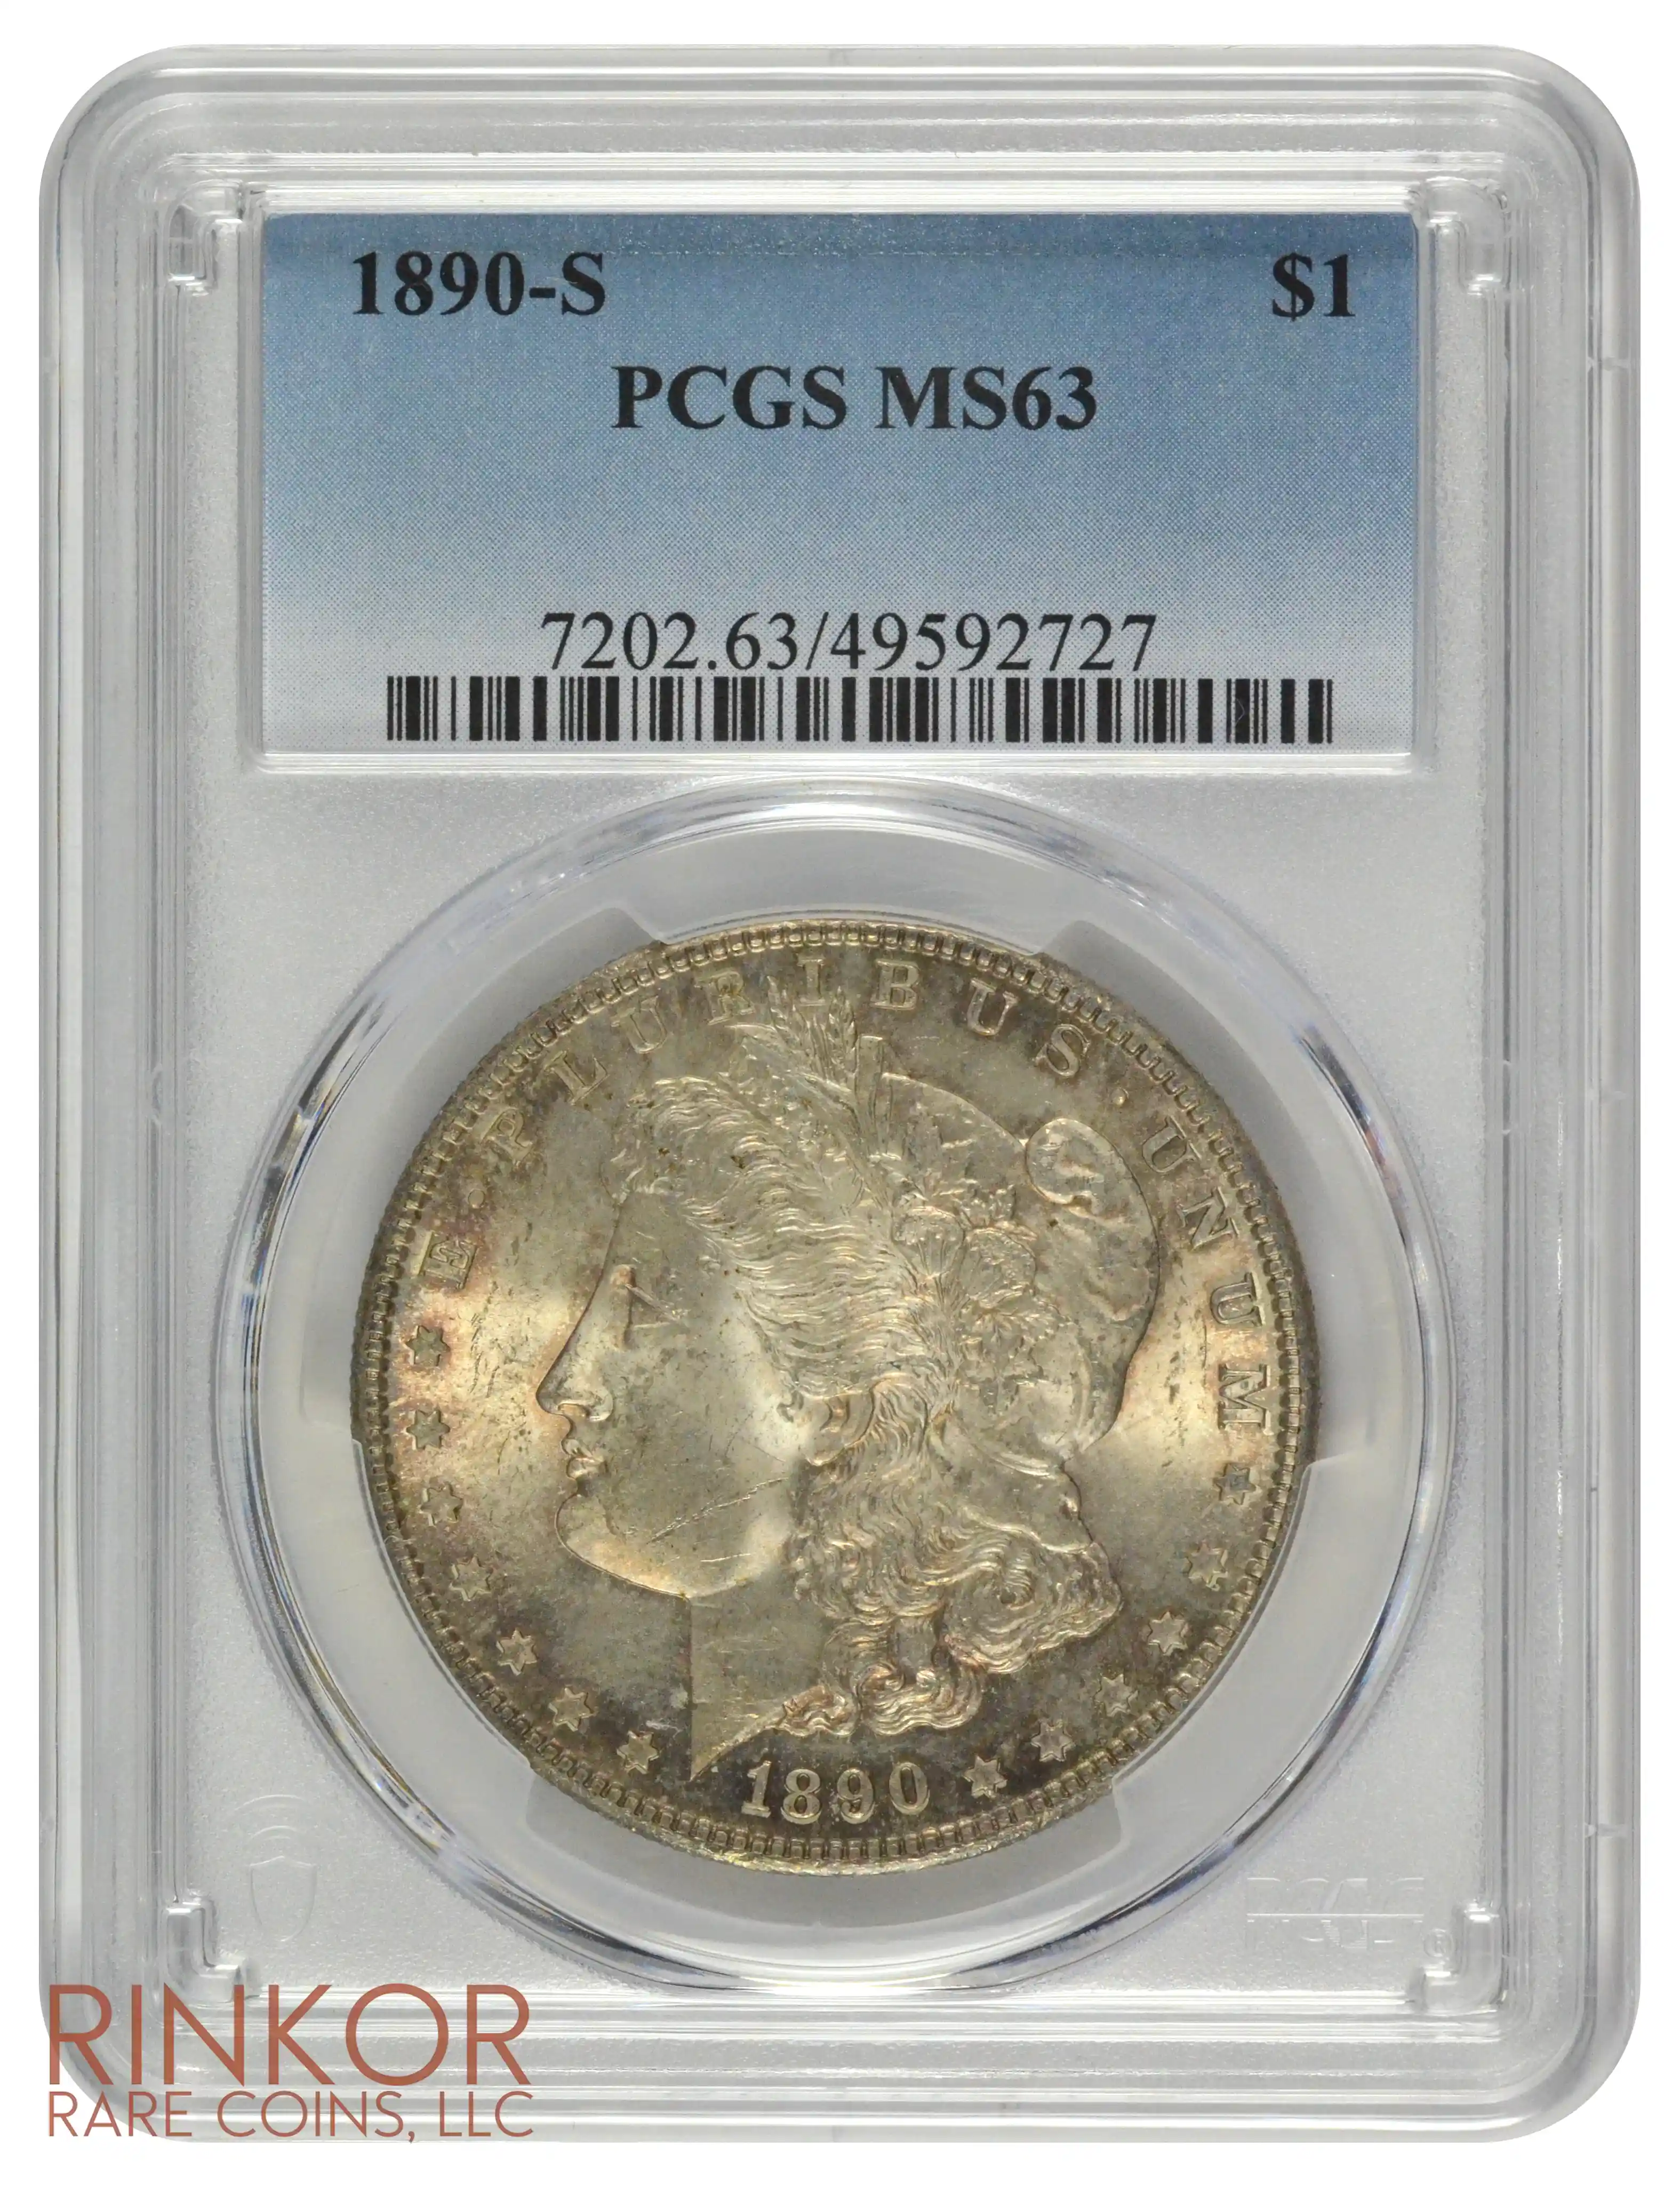 1890-S $1 PCGS MS 63